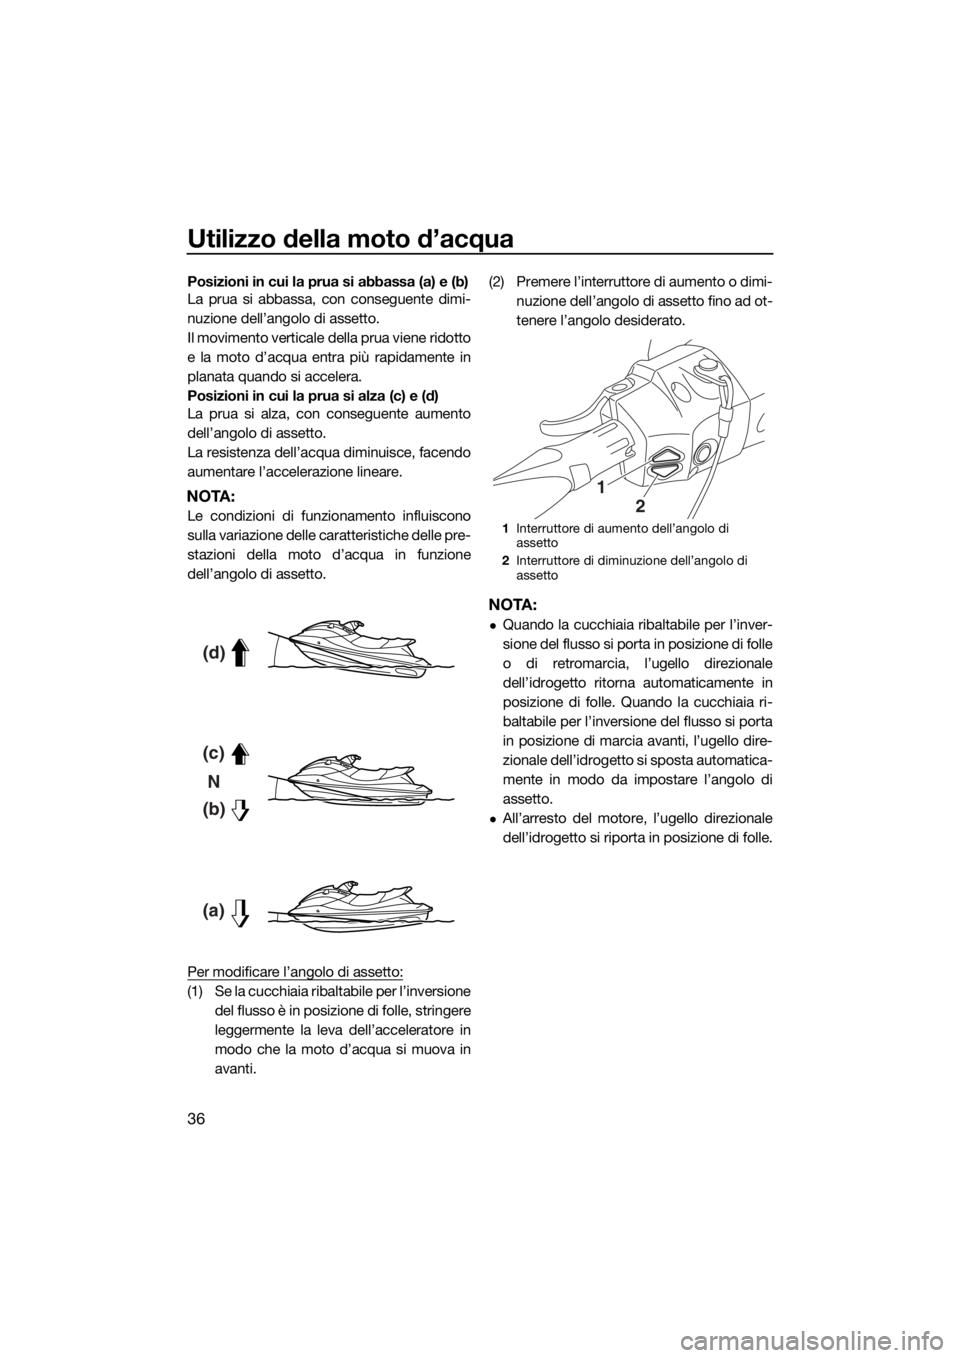 YAMAHA GP1800 2017  Manuale duso (in Italian) Utilizzo della moto d’acqua
36
Posizioni in cui la prua si abbassa (a) e (b)
La prua si abbassa, con conseguente dimi-
nuzione dell’angolo di assetto.
Il movimento verticale della prua viene ridot